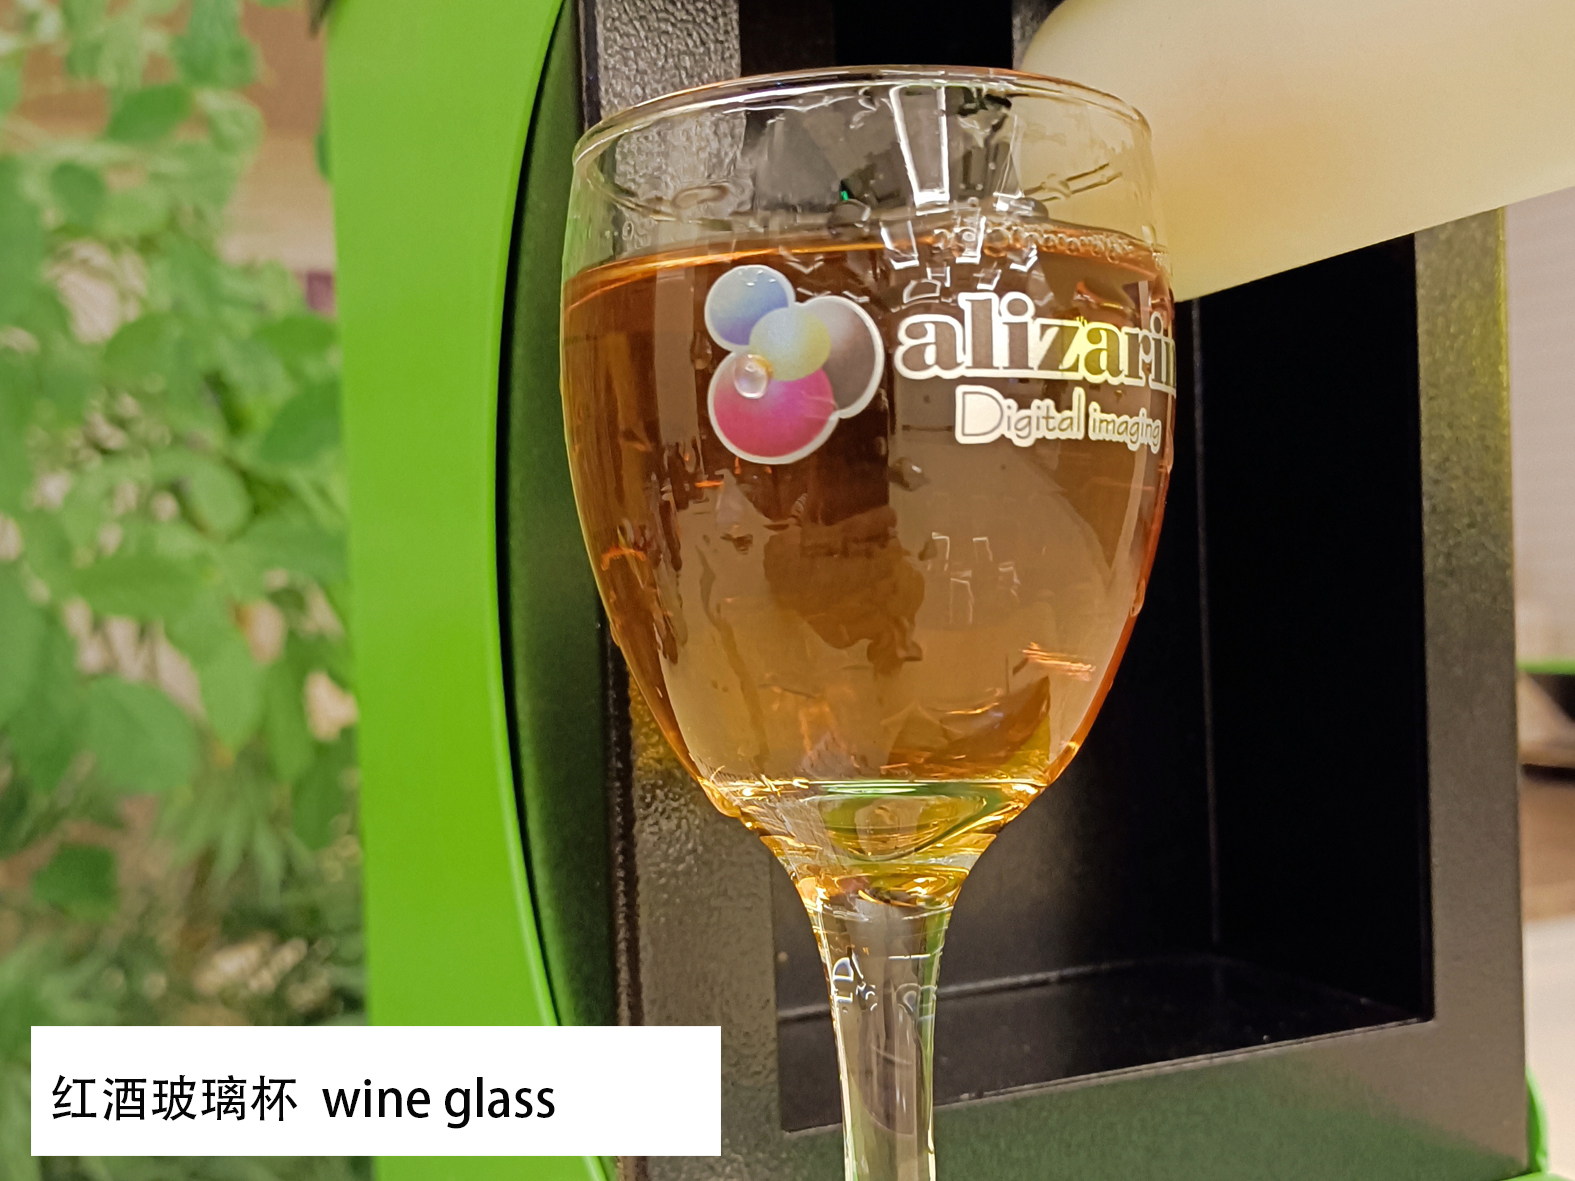 红酒玻璃杯热转印 wine glass #HSF #玻璃热转印 #酒瓶热转印